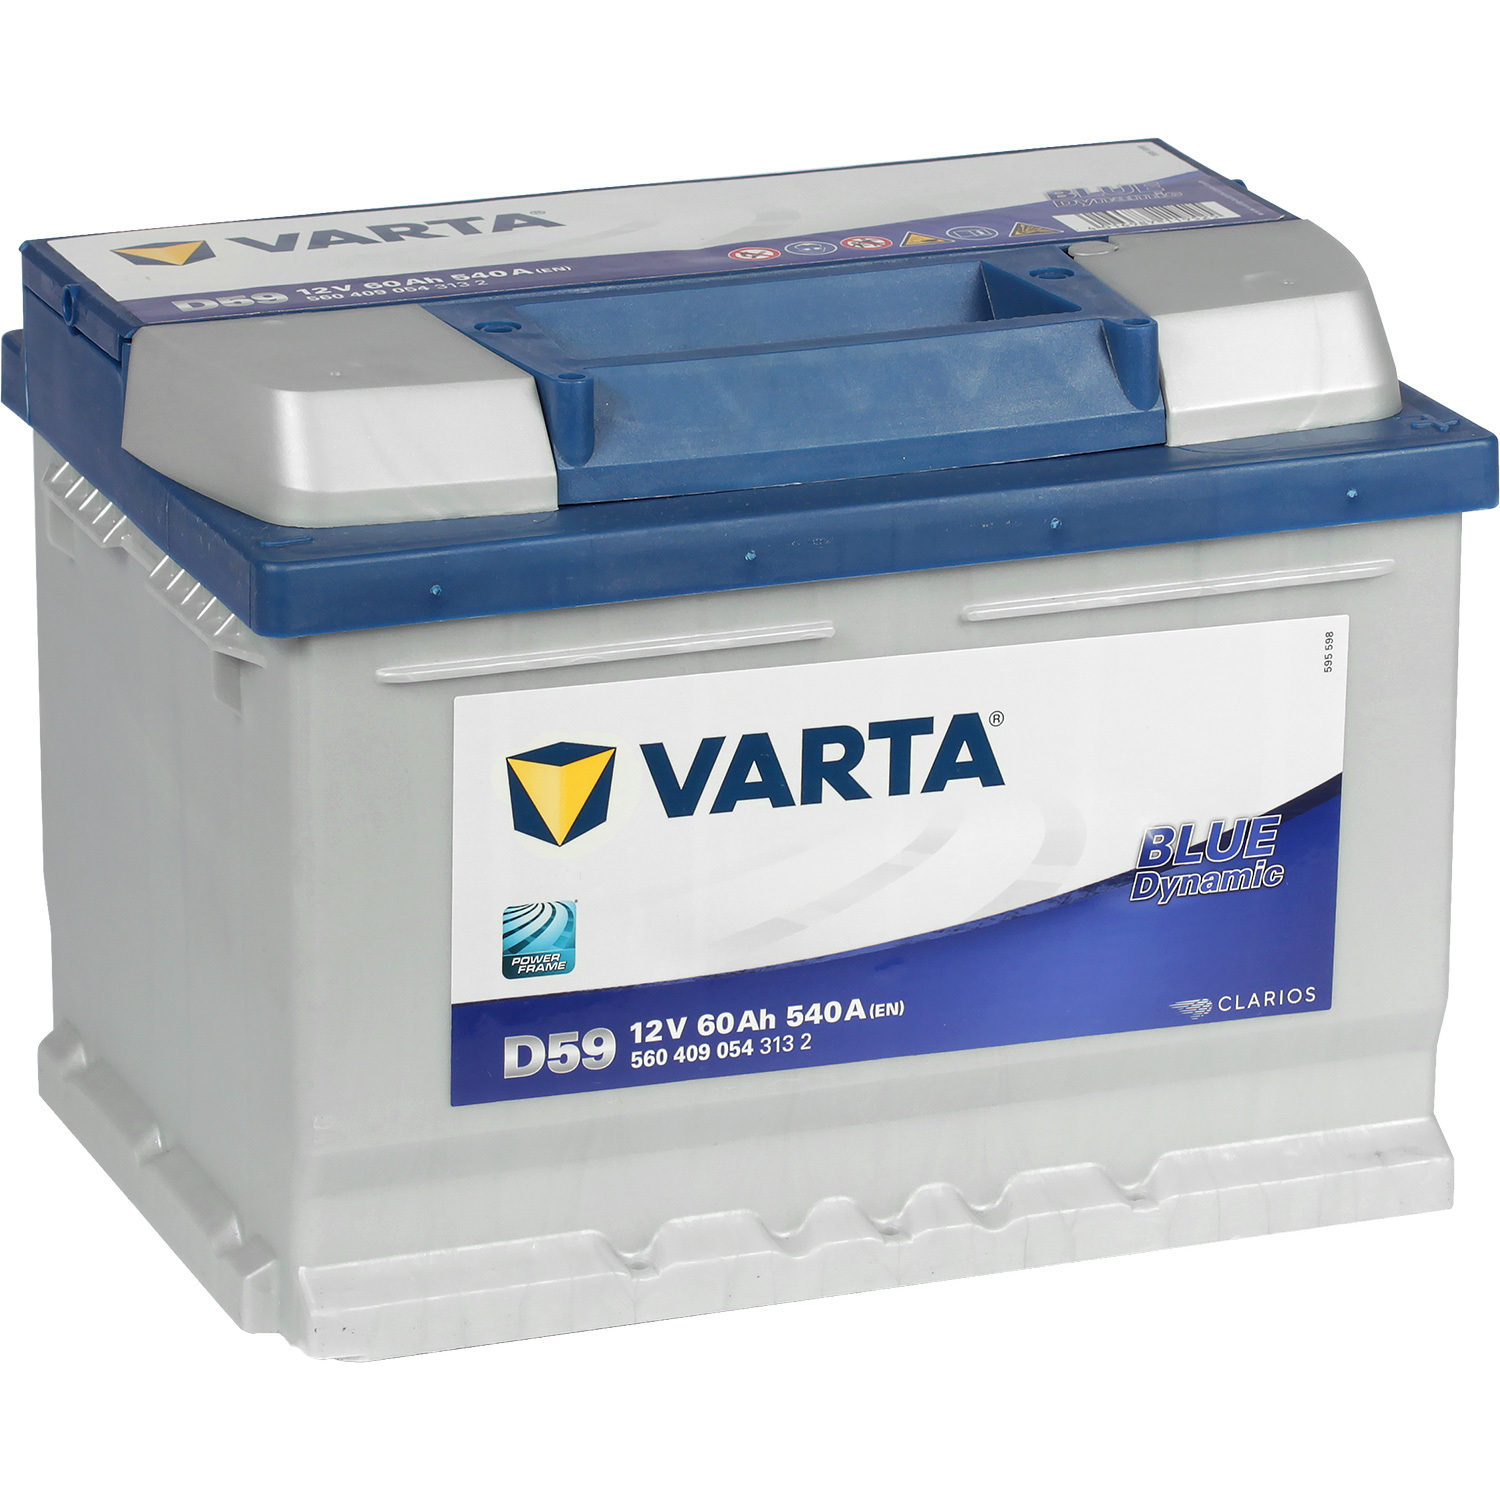 Varta Автомобильный аккумулятор Varta Blue Dynamic D59 60 Ач обратная полярность LB2 varta автомобильный аккумулятор varta blue dynamic f17 80 ач обратная полярность lb4